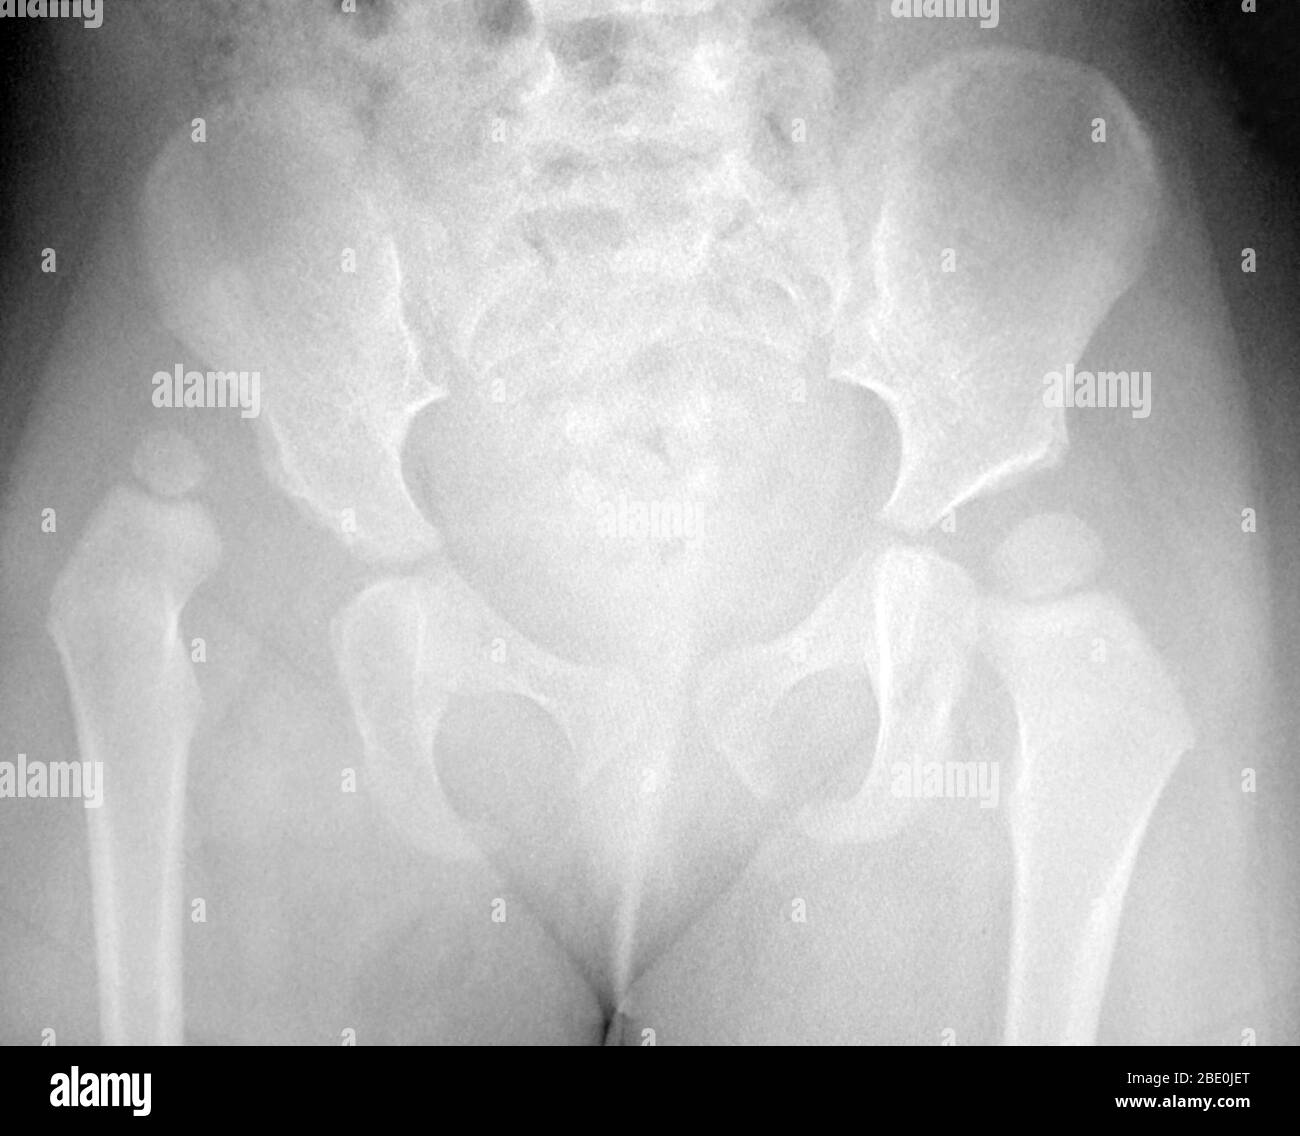 Raggi X che mostra un dislocato anca destra (sulla sinistra dell'immagine) di un bambino. Foto Stock